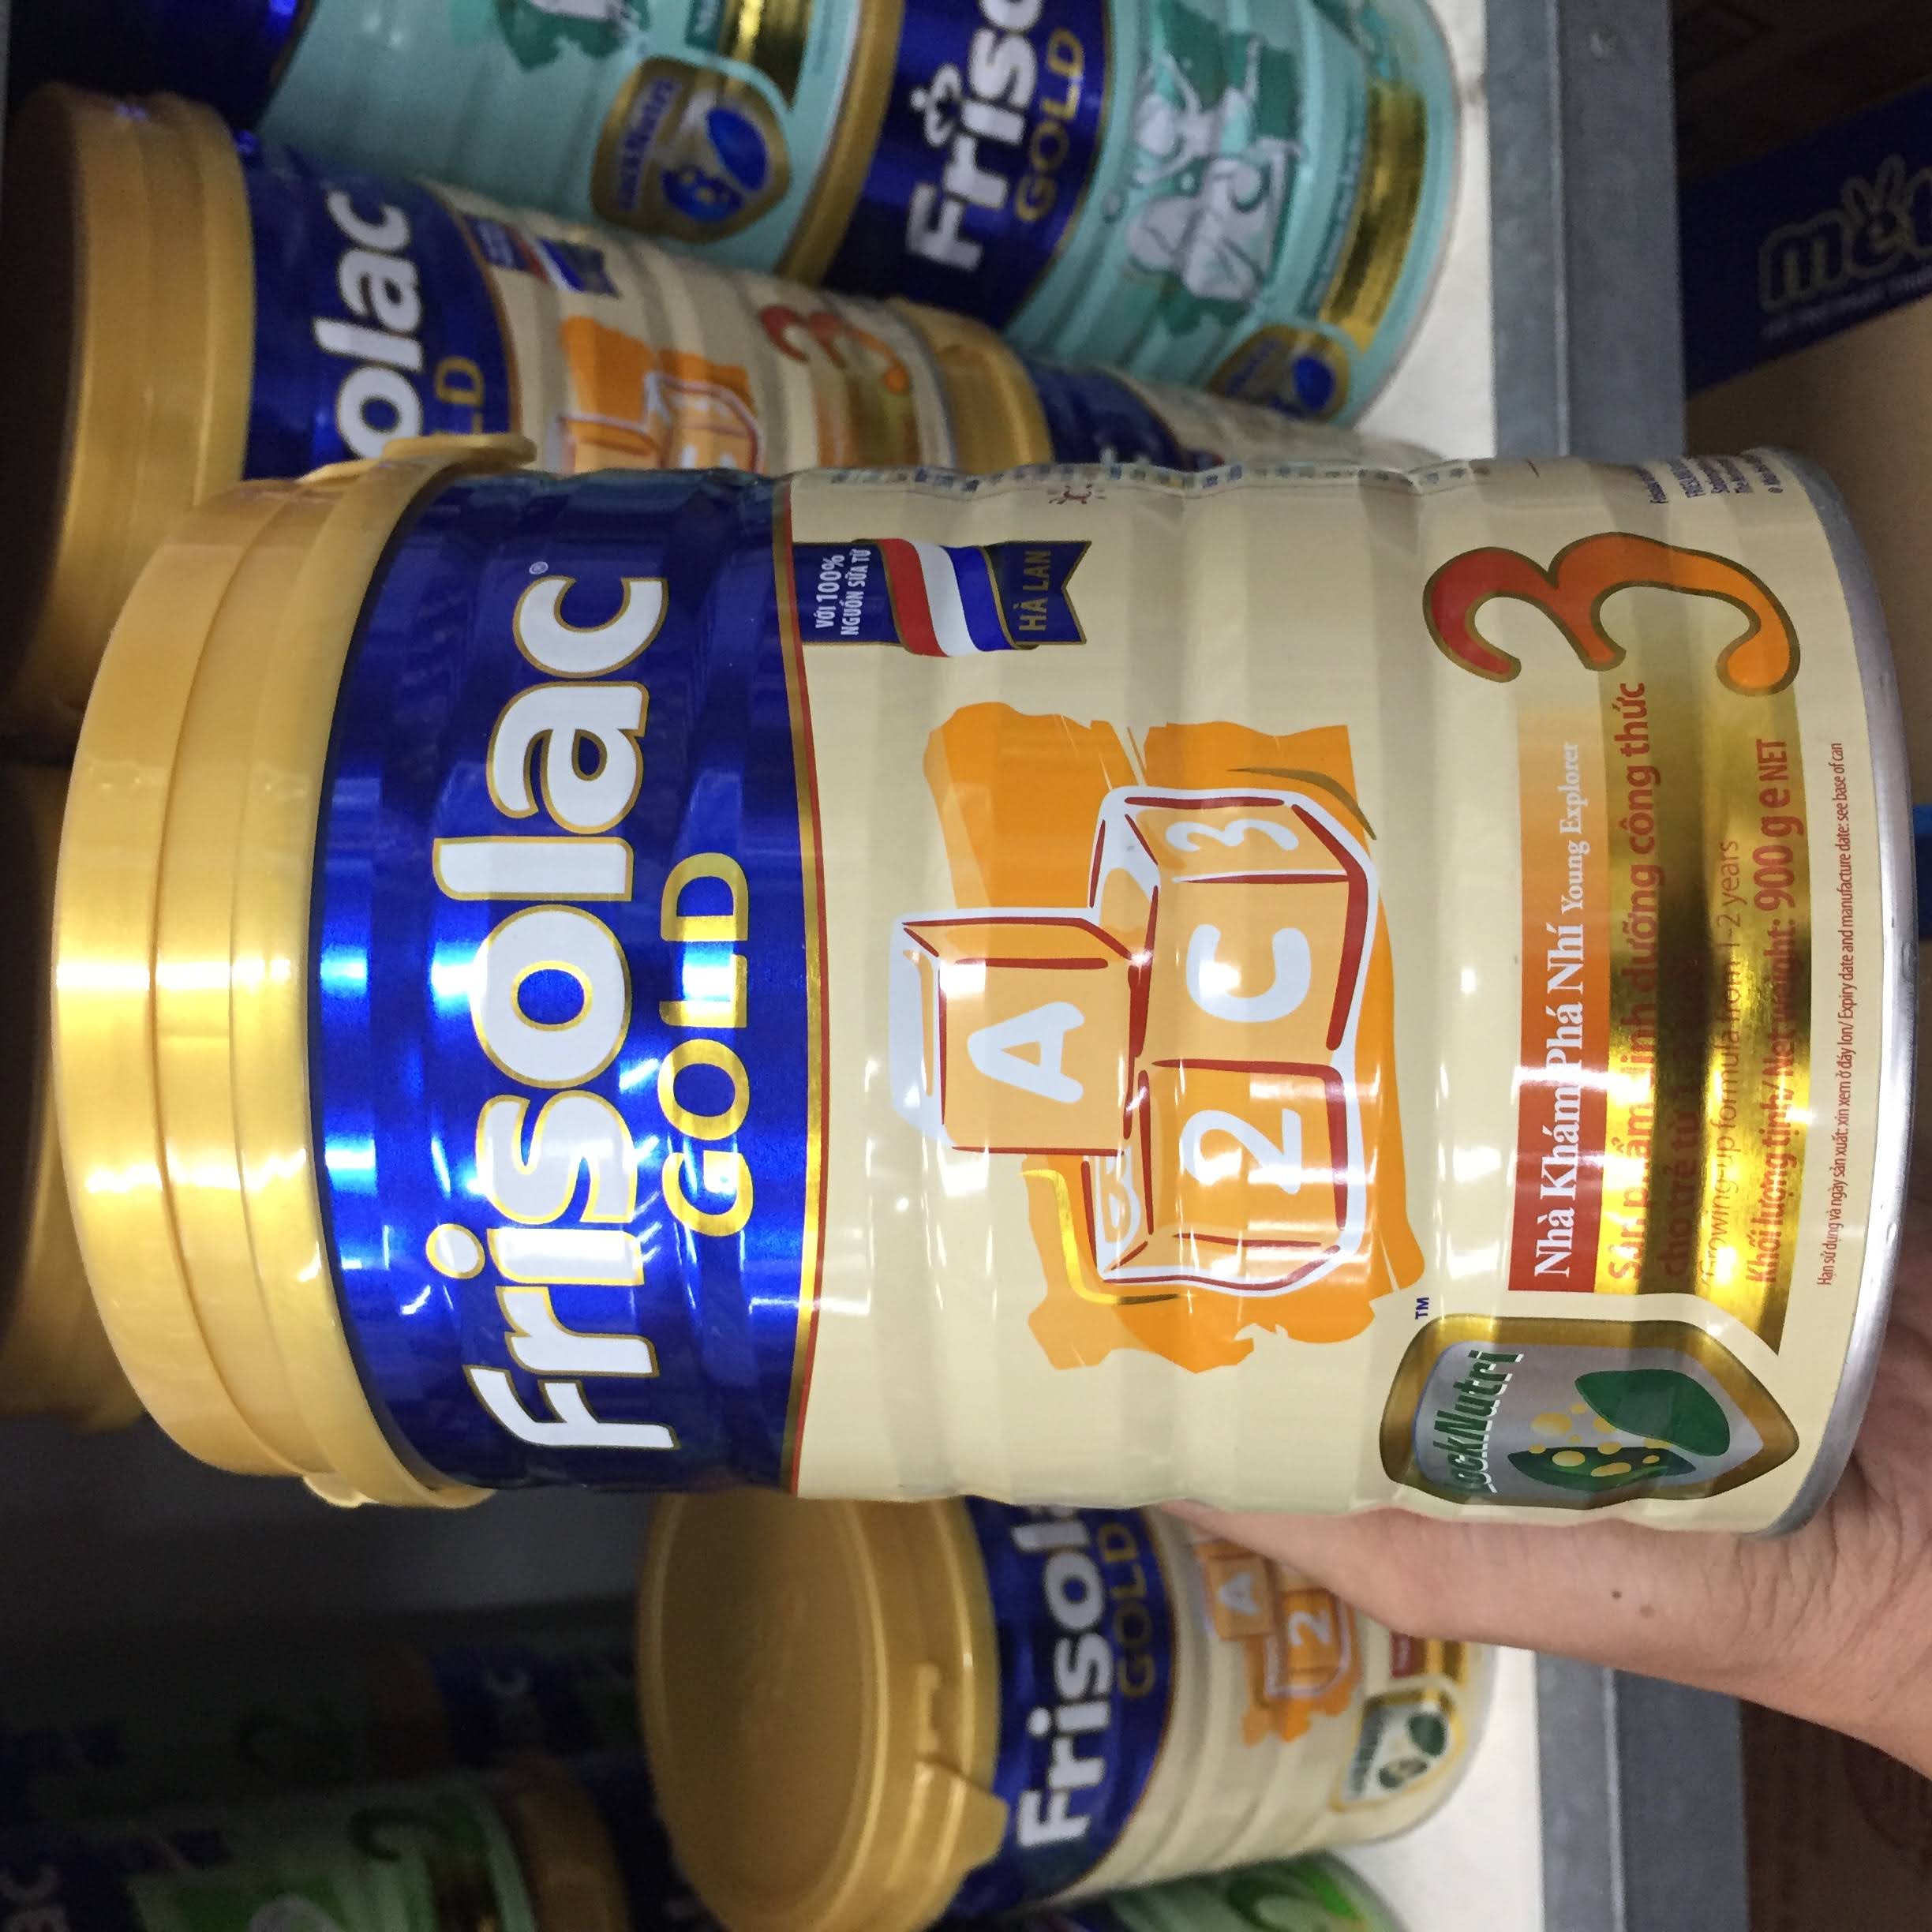 Sữa bột Frisolac gold 3 sản phẩm dinh dưỡng bé từ 1 - 2 tuổi.